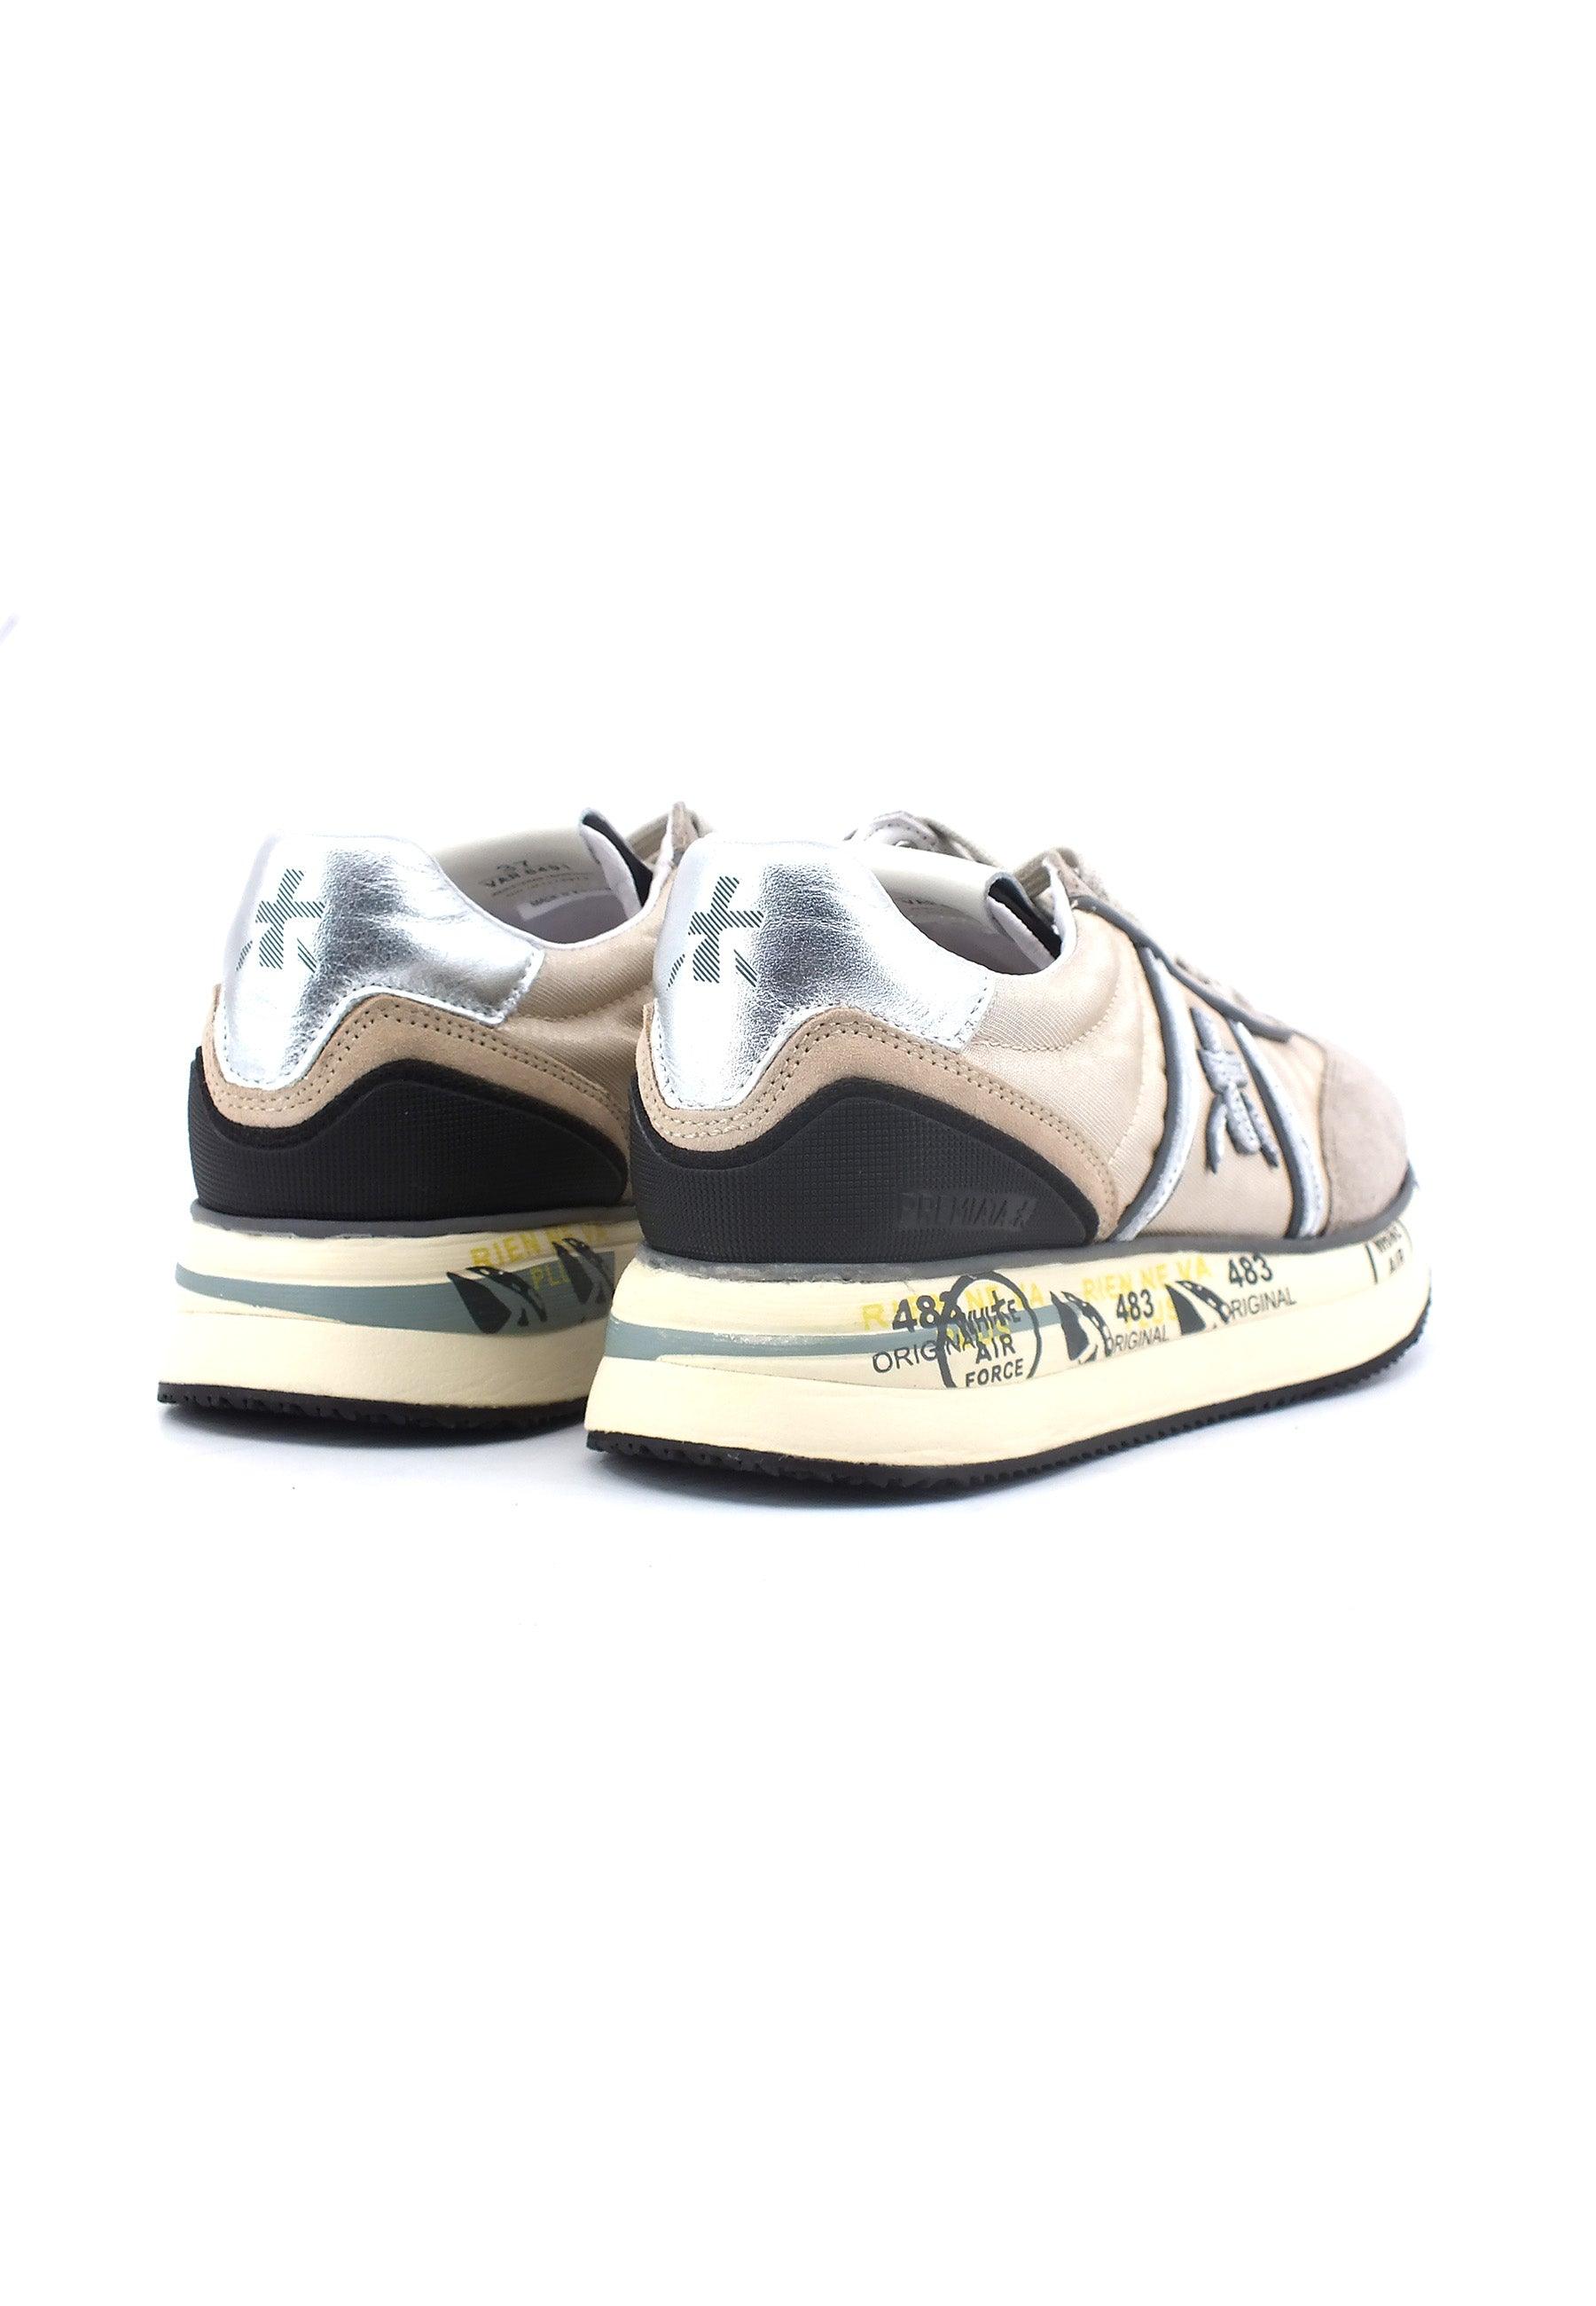 PREMIATA Sneaker Donna Tortora Beige CONNY-6491 - Sandrini Calzature e Abbigliamento